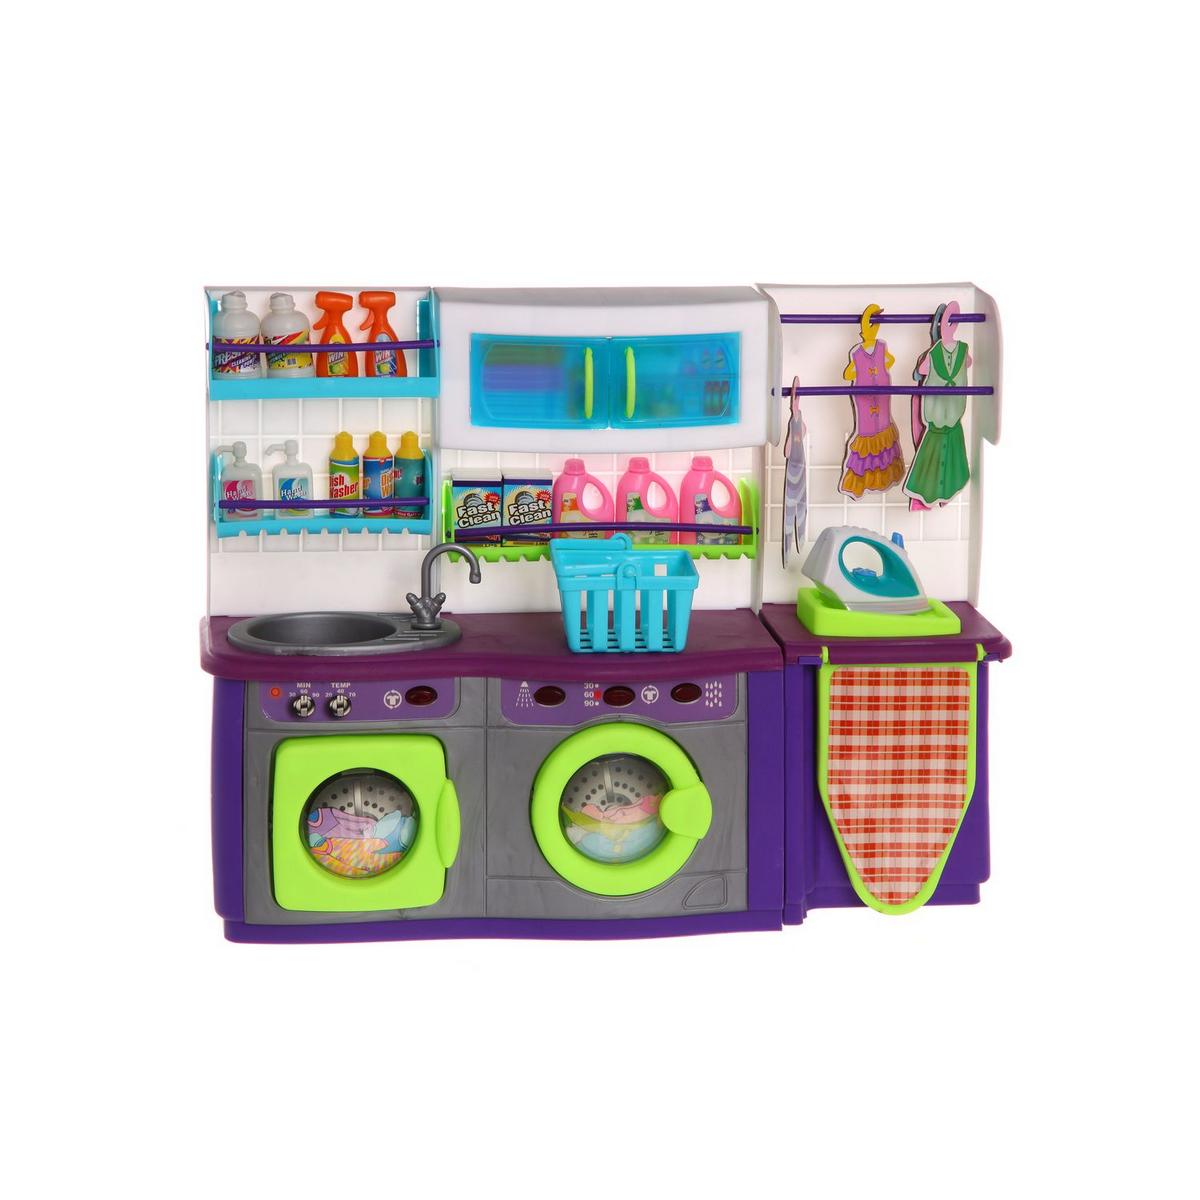 Озон наборы для кухни. Игрушка кухня для девочек. Маленькая игрушечная кухня. Игровые наборы для девочек. Игровой набор кухни маленький.